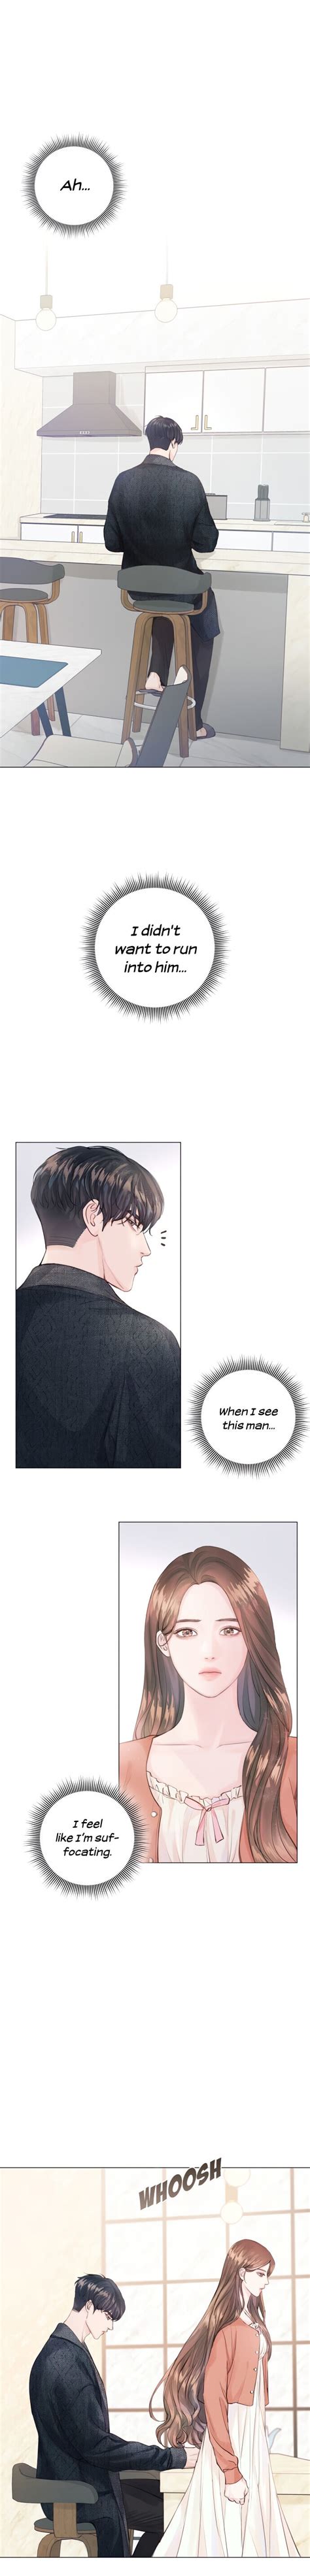 Jika ingin membaca episode selanjutnya, kamu harus membaca namun di never webtoon korea, komik ini telah mencapai chapter 4 dan 5. Surely a Happy Ending - Chapter 1 - 1ST KISS MANHUA